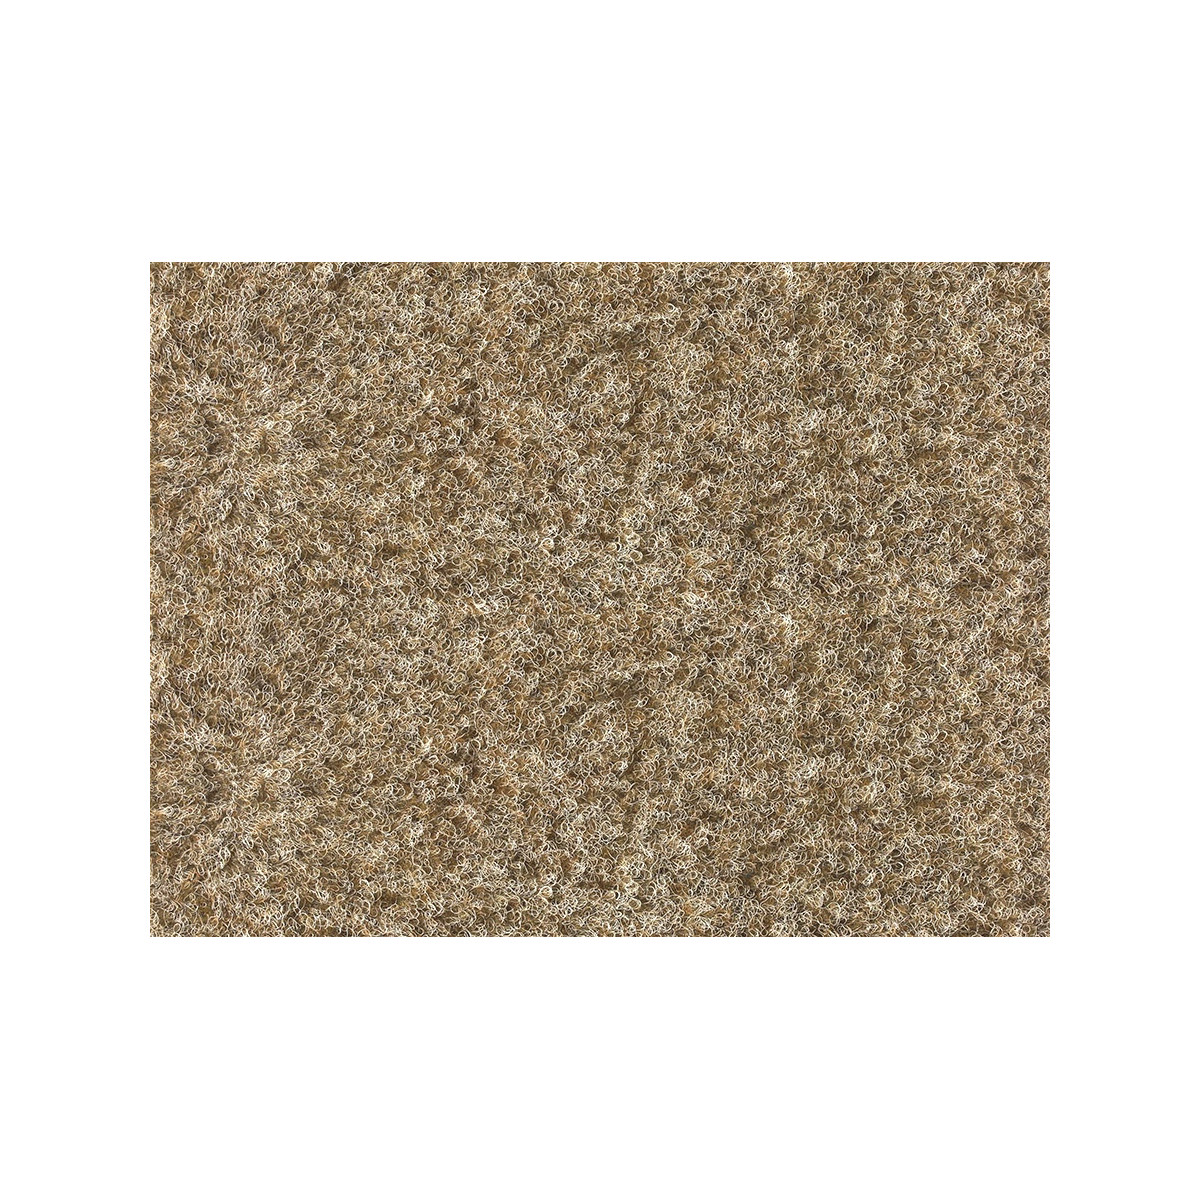 AKCE: 180x600 cm Metrážový koberec Santana 12 béžová s podkladem resine, zátěžový